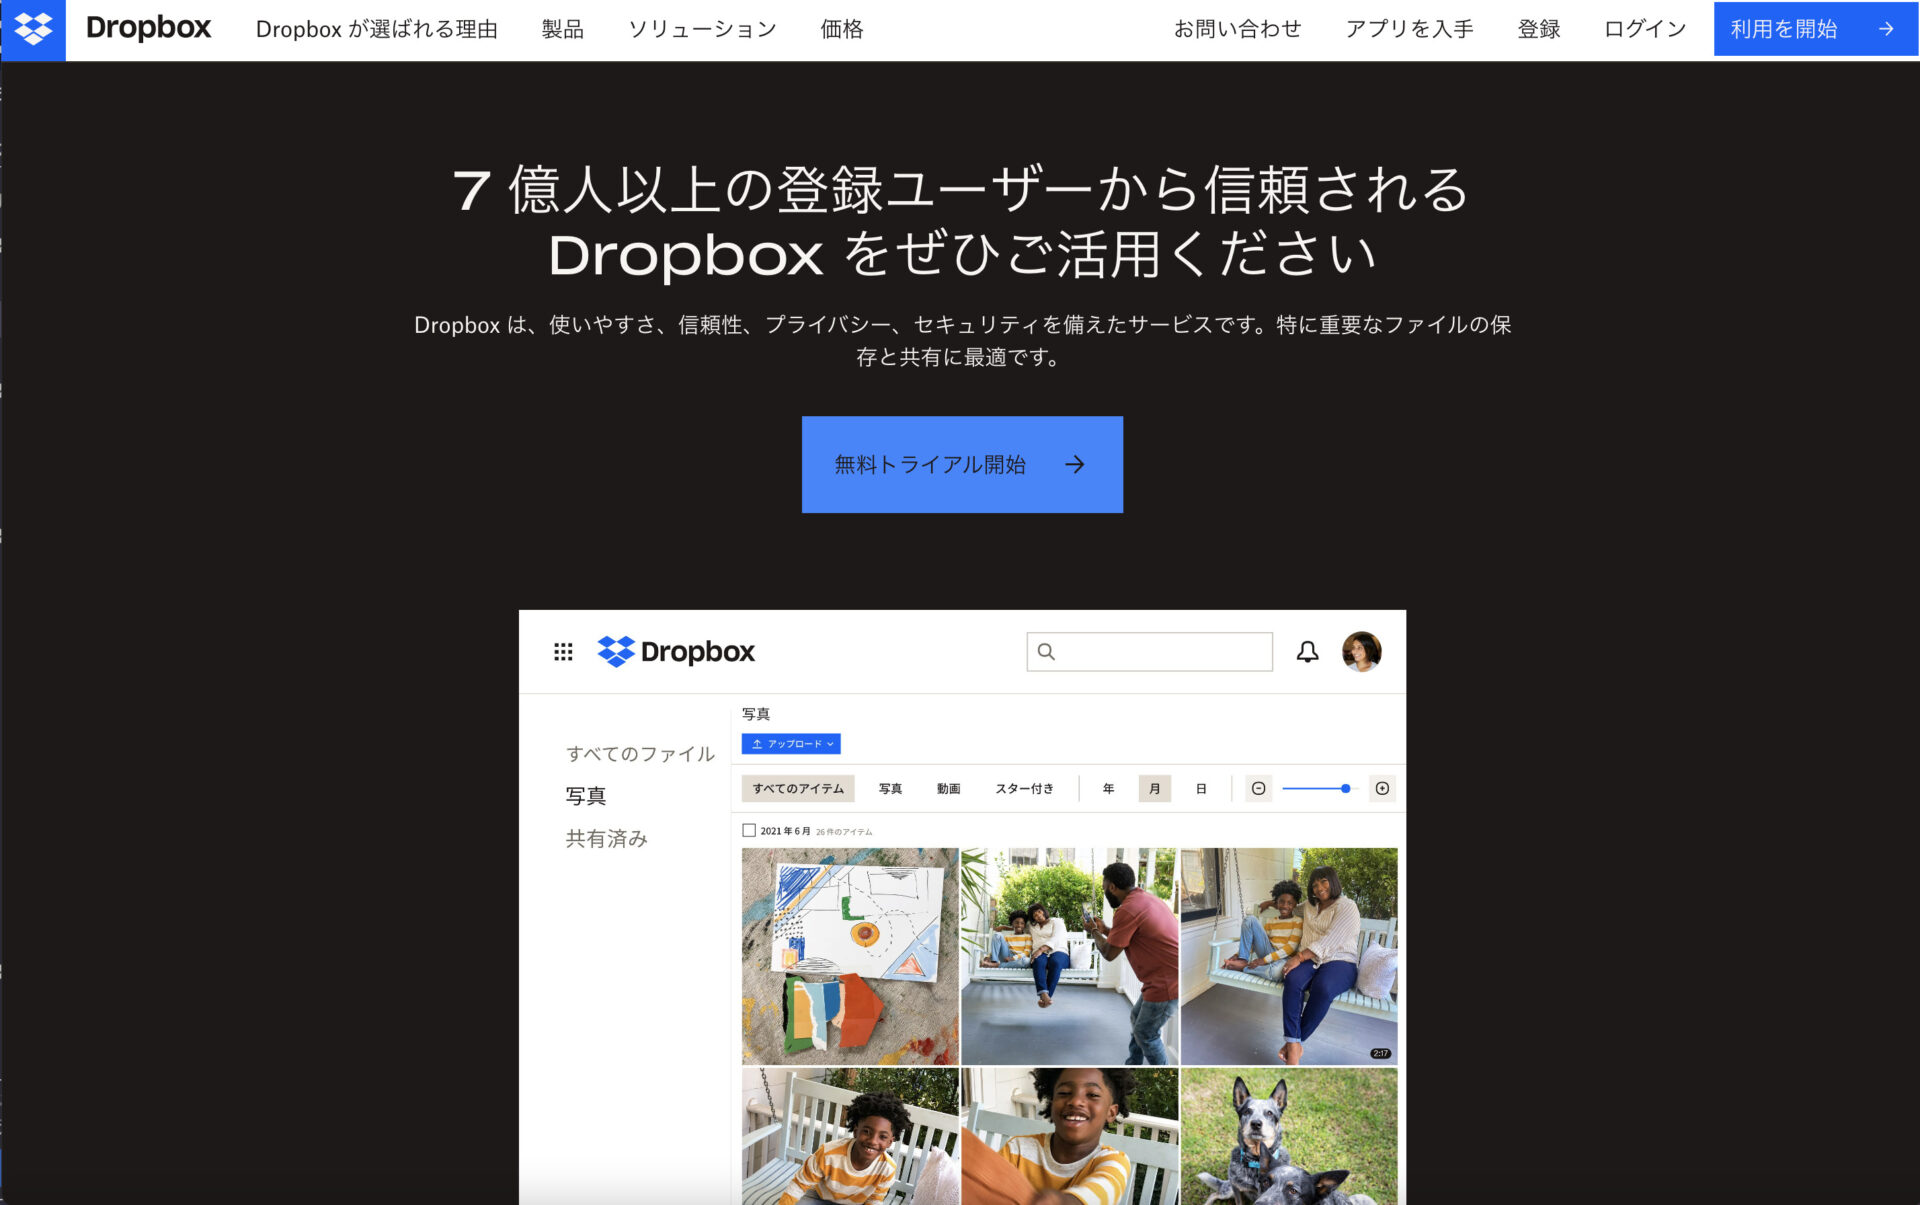 Dropboxのトップページ